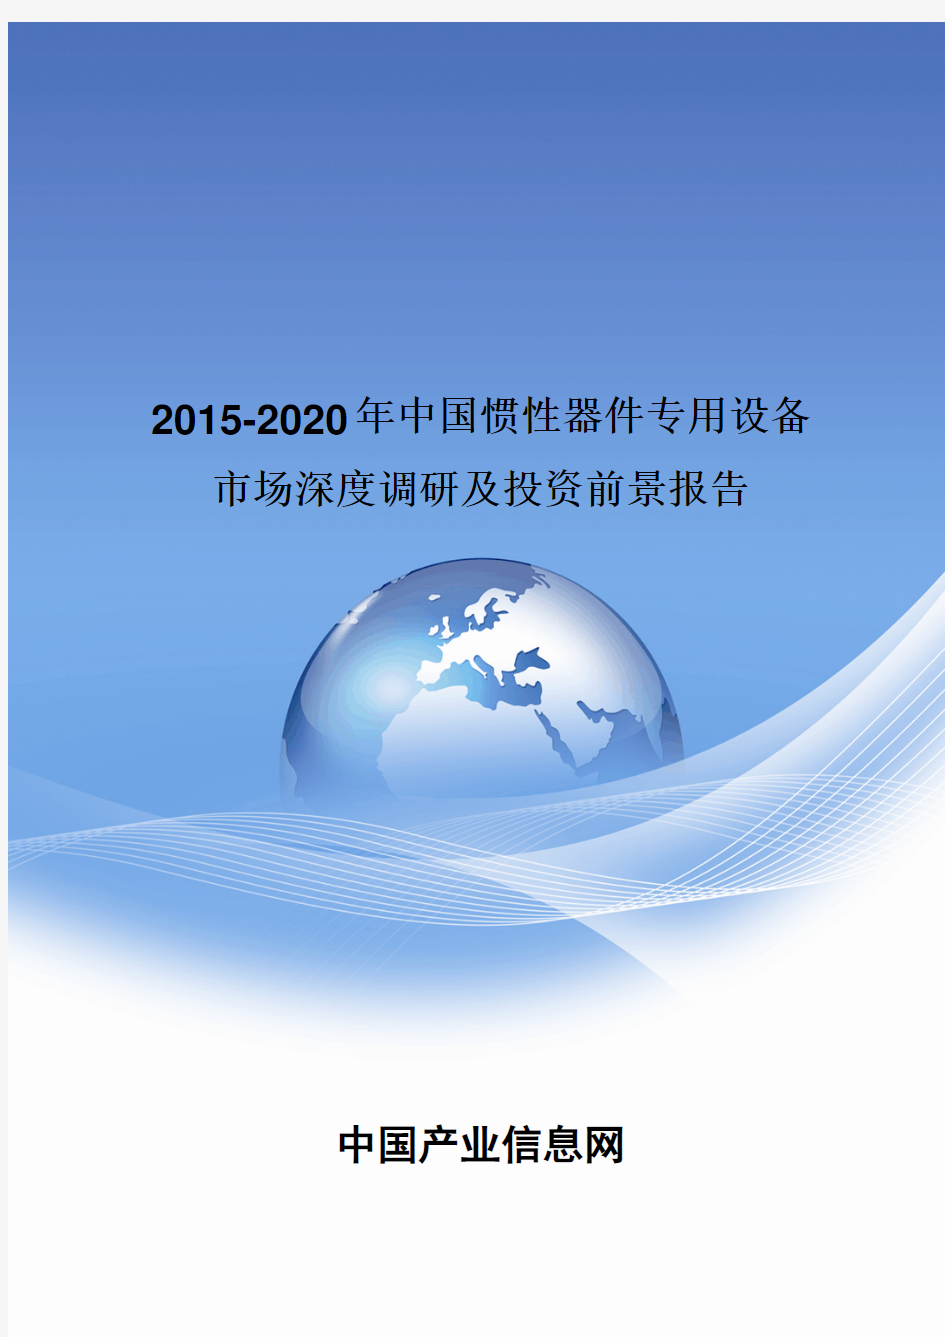 2015-2020年中国惯性器件专用设备投资前景报告